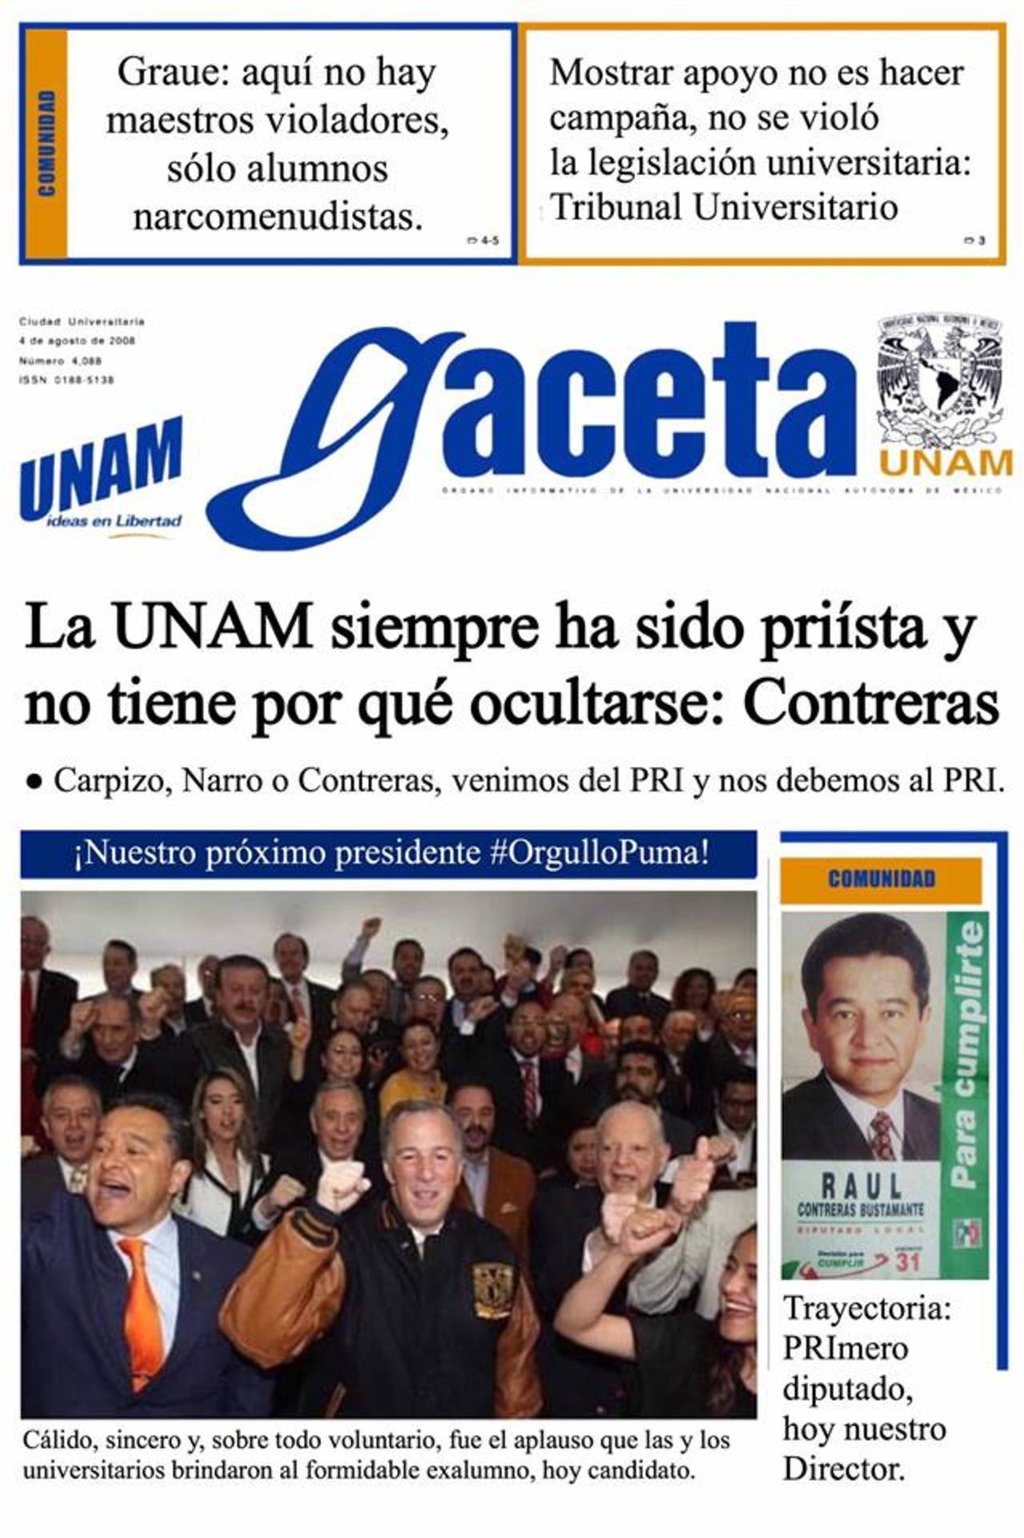 Falsa portada de Gaceta de UNAM que circula en redes